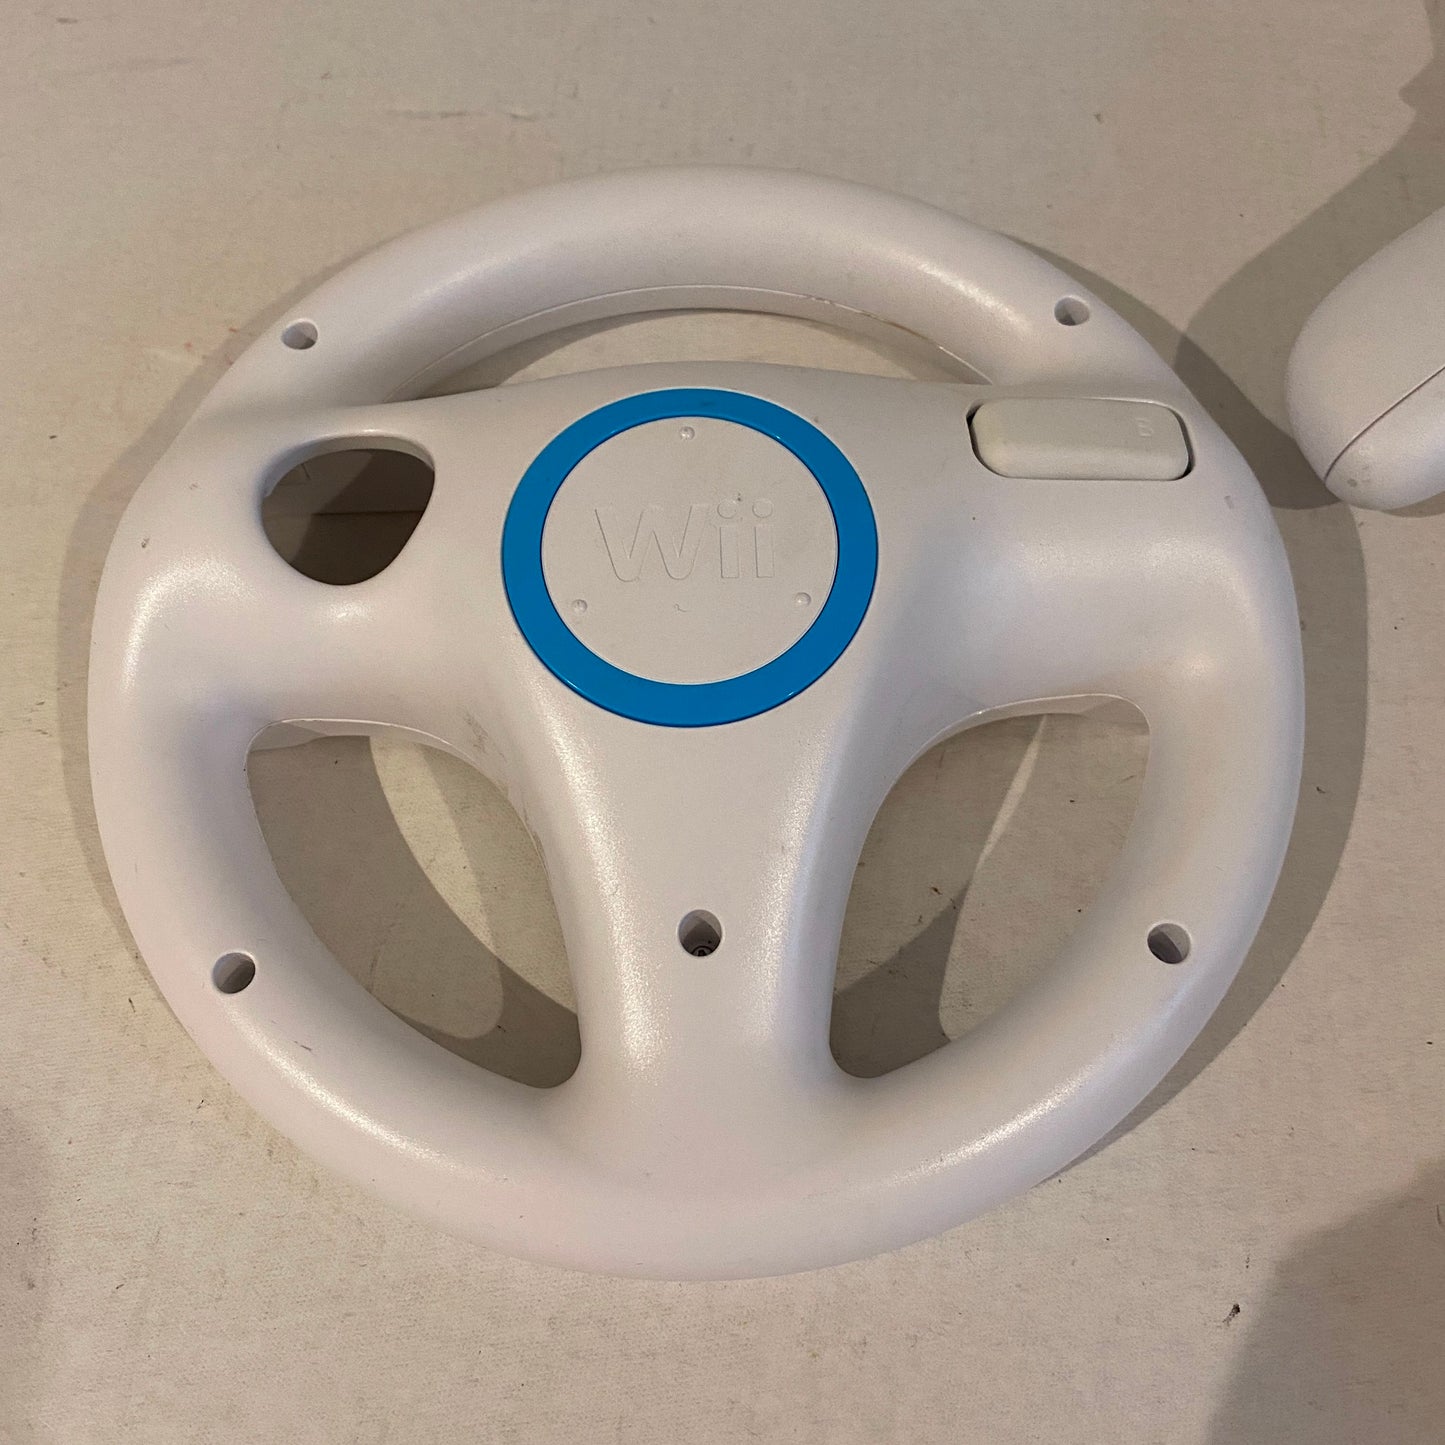 Nintendo Wii Zapper and Steering Wheel